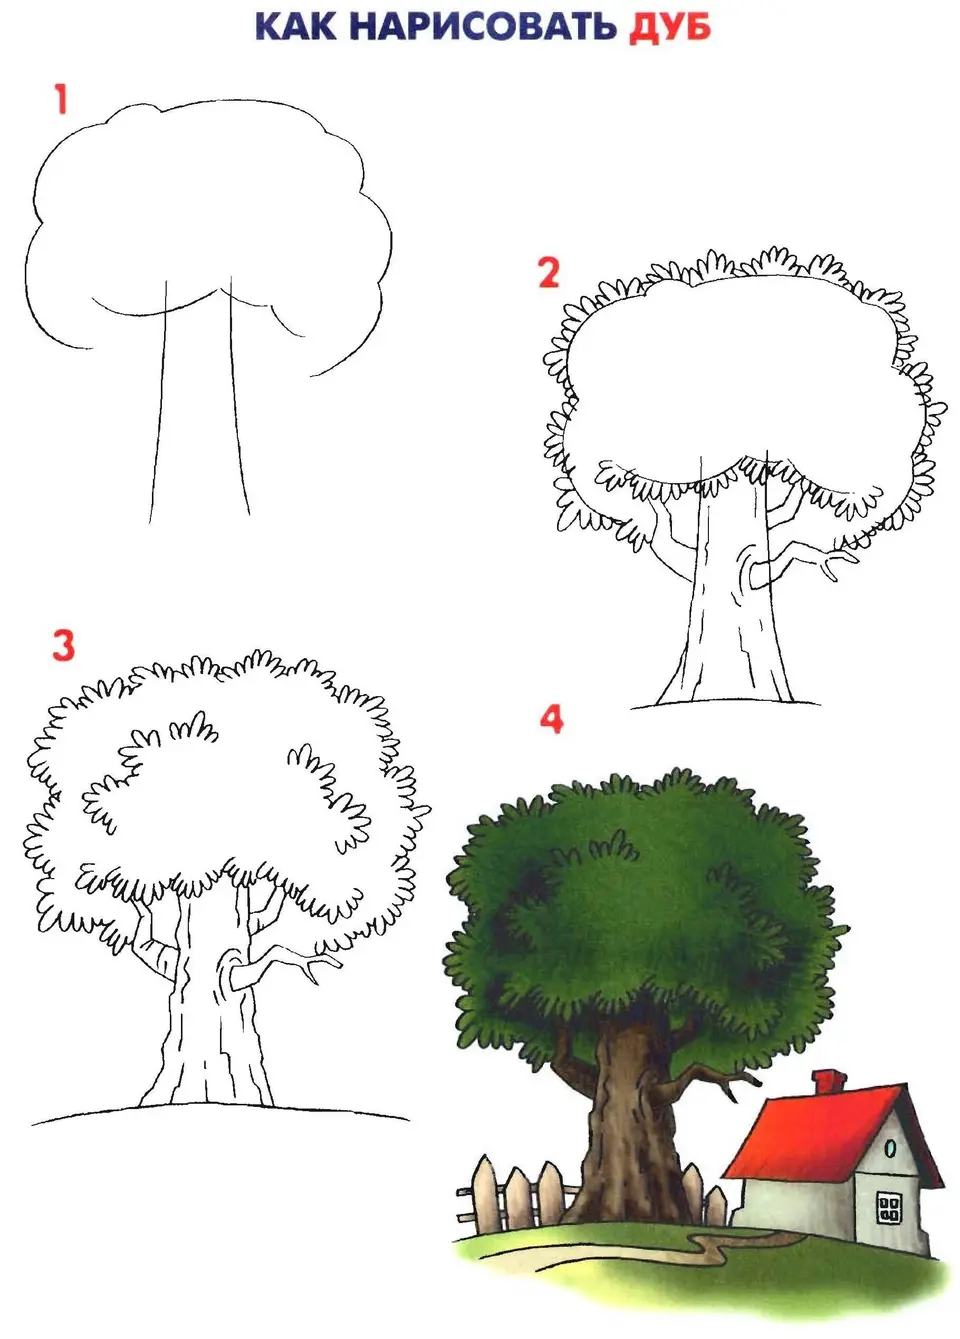 Дерево карандашом для детей